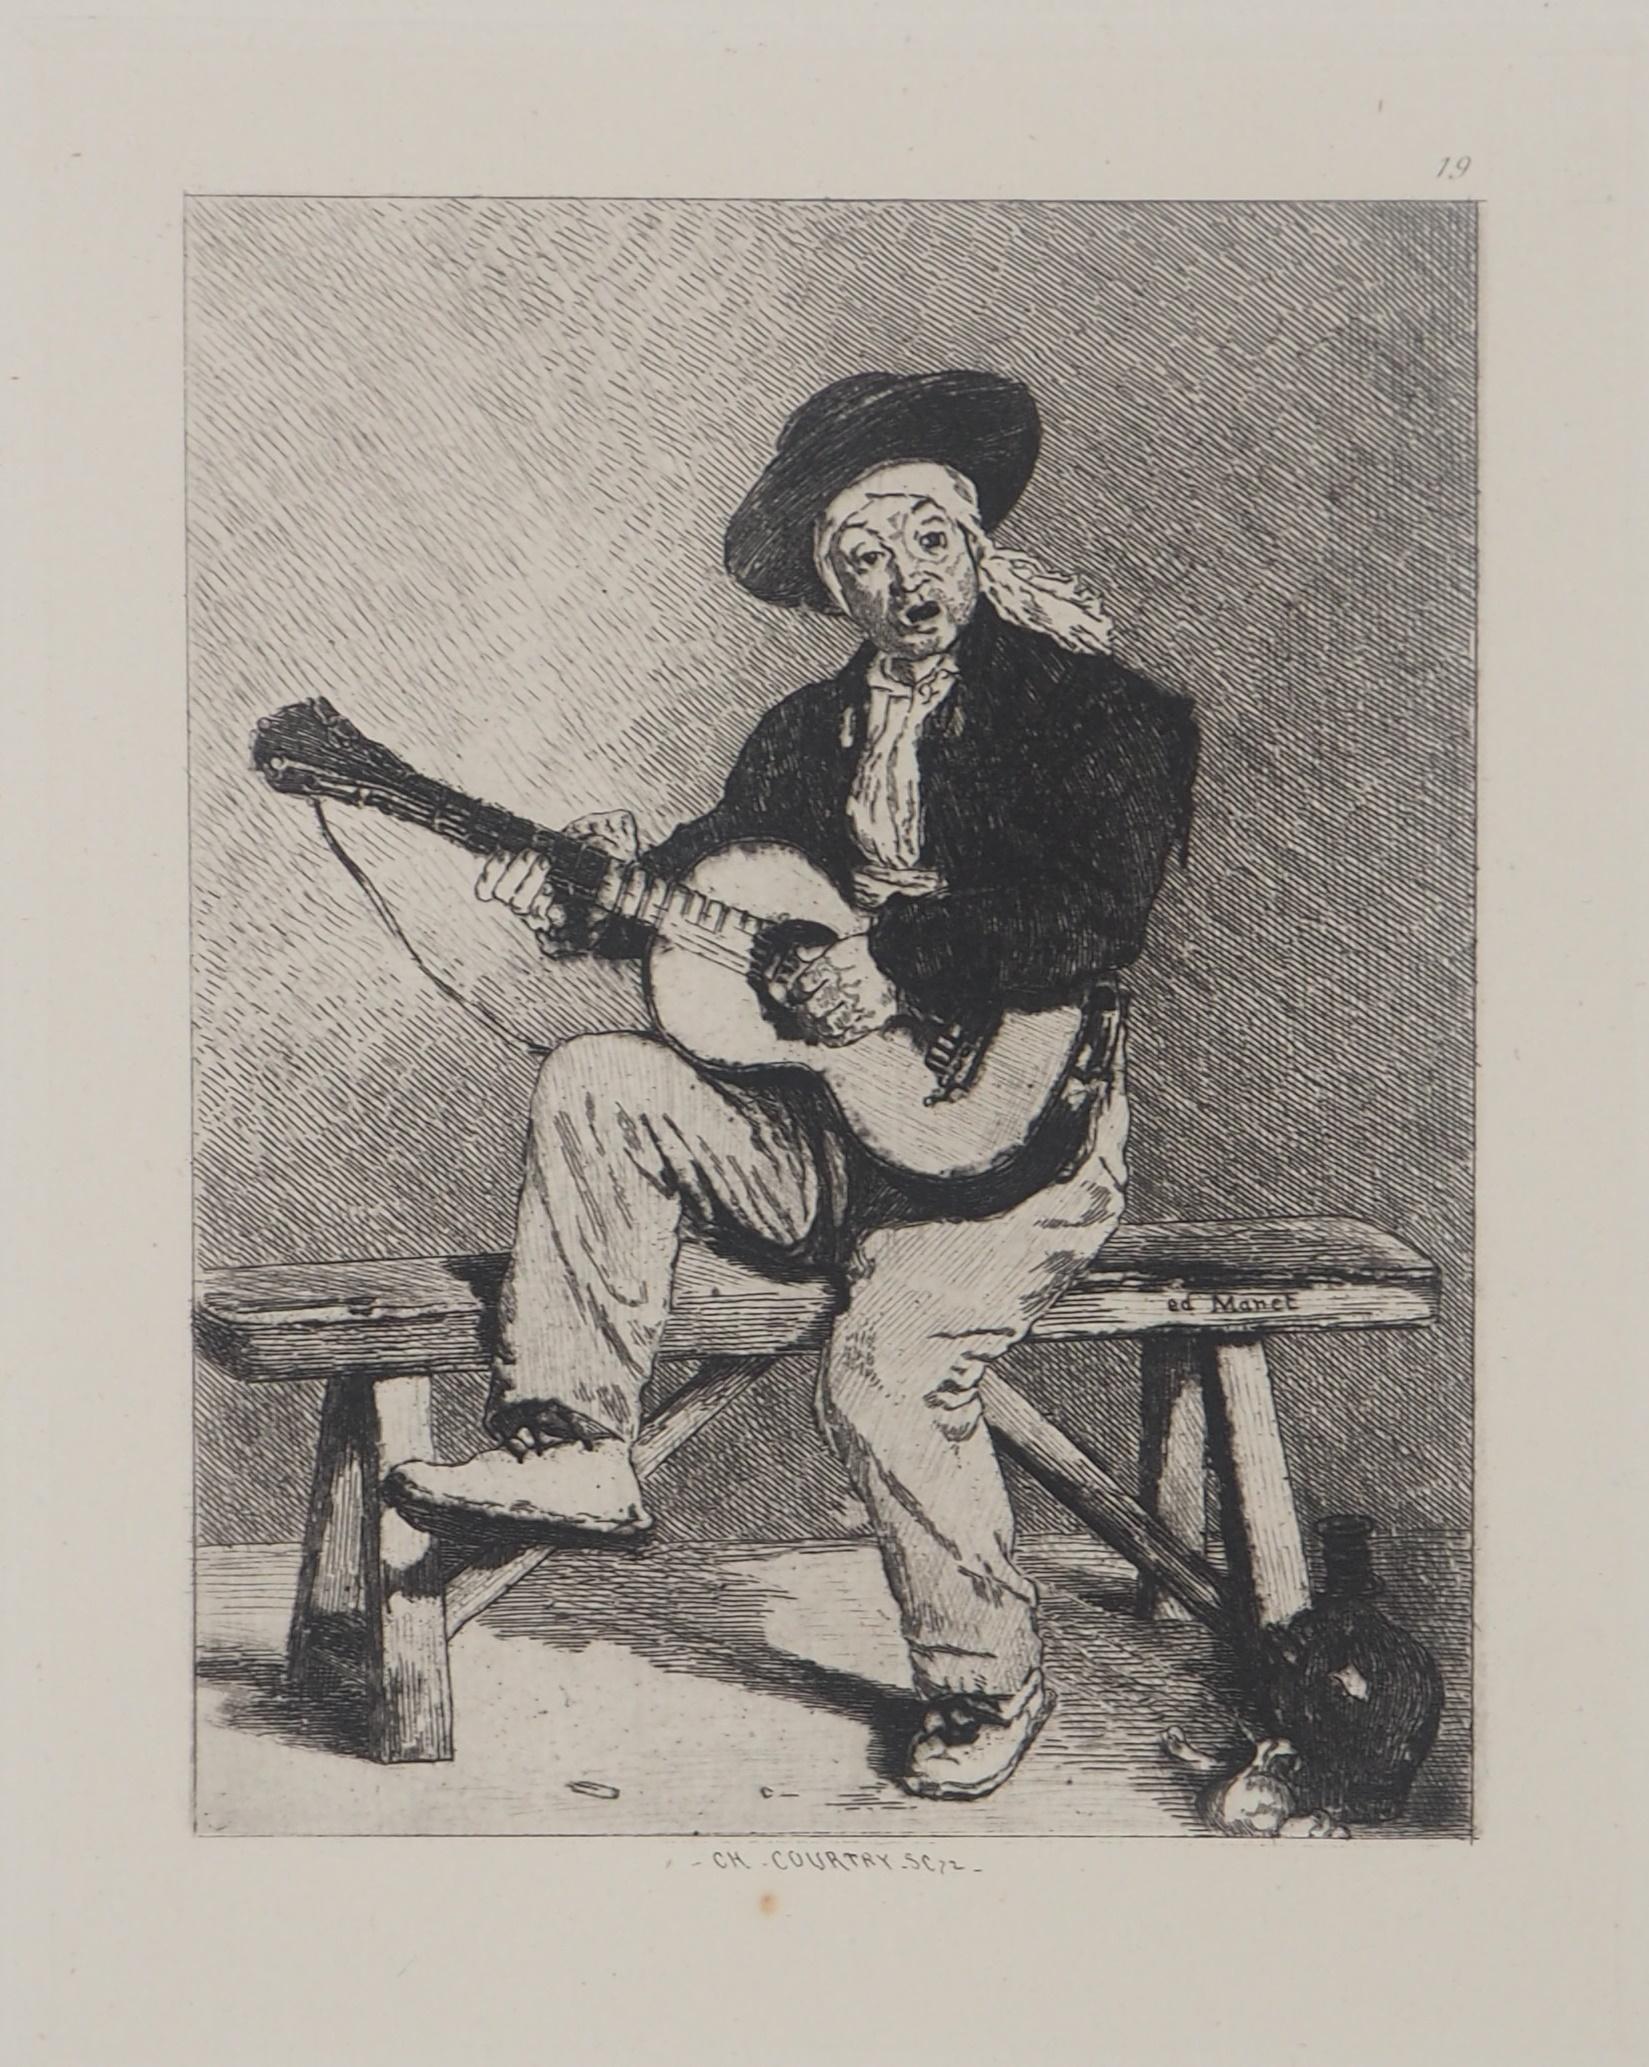 Spanish Guitar Player - Original etching - Ed. Durand Ruel, 1873